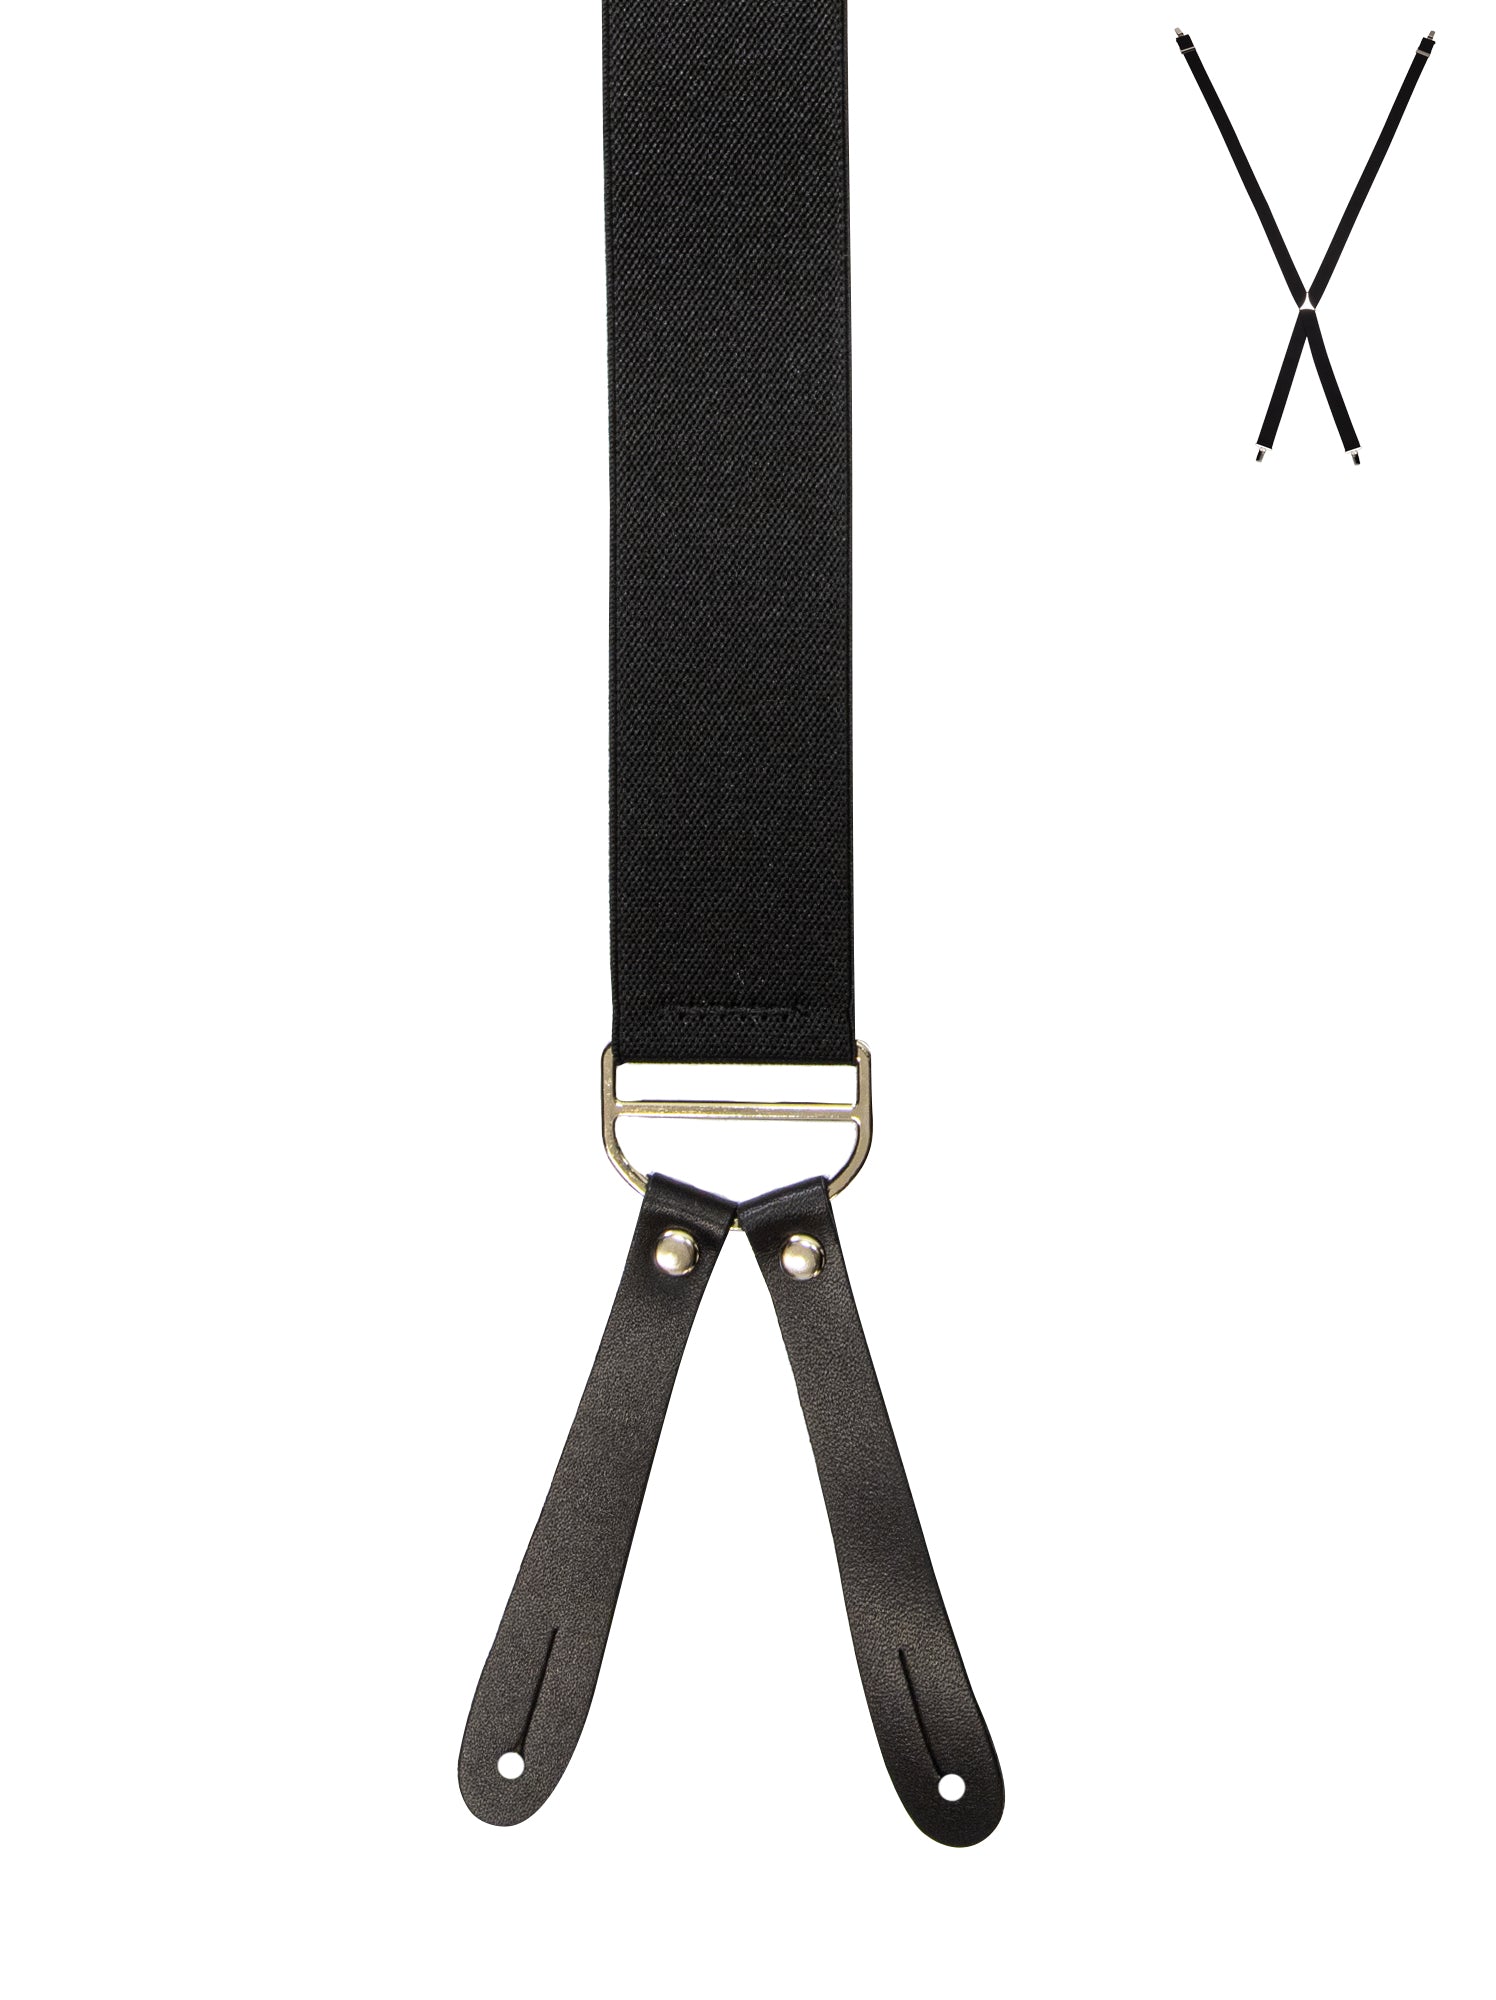 BRACES. X-Back with Leather Ends. Plain Black. 35mm width.-Braces-PEROZ Accessories